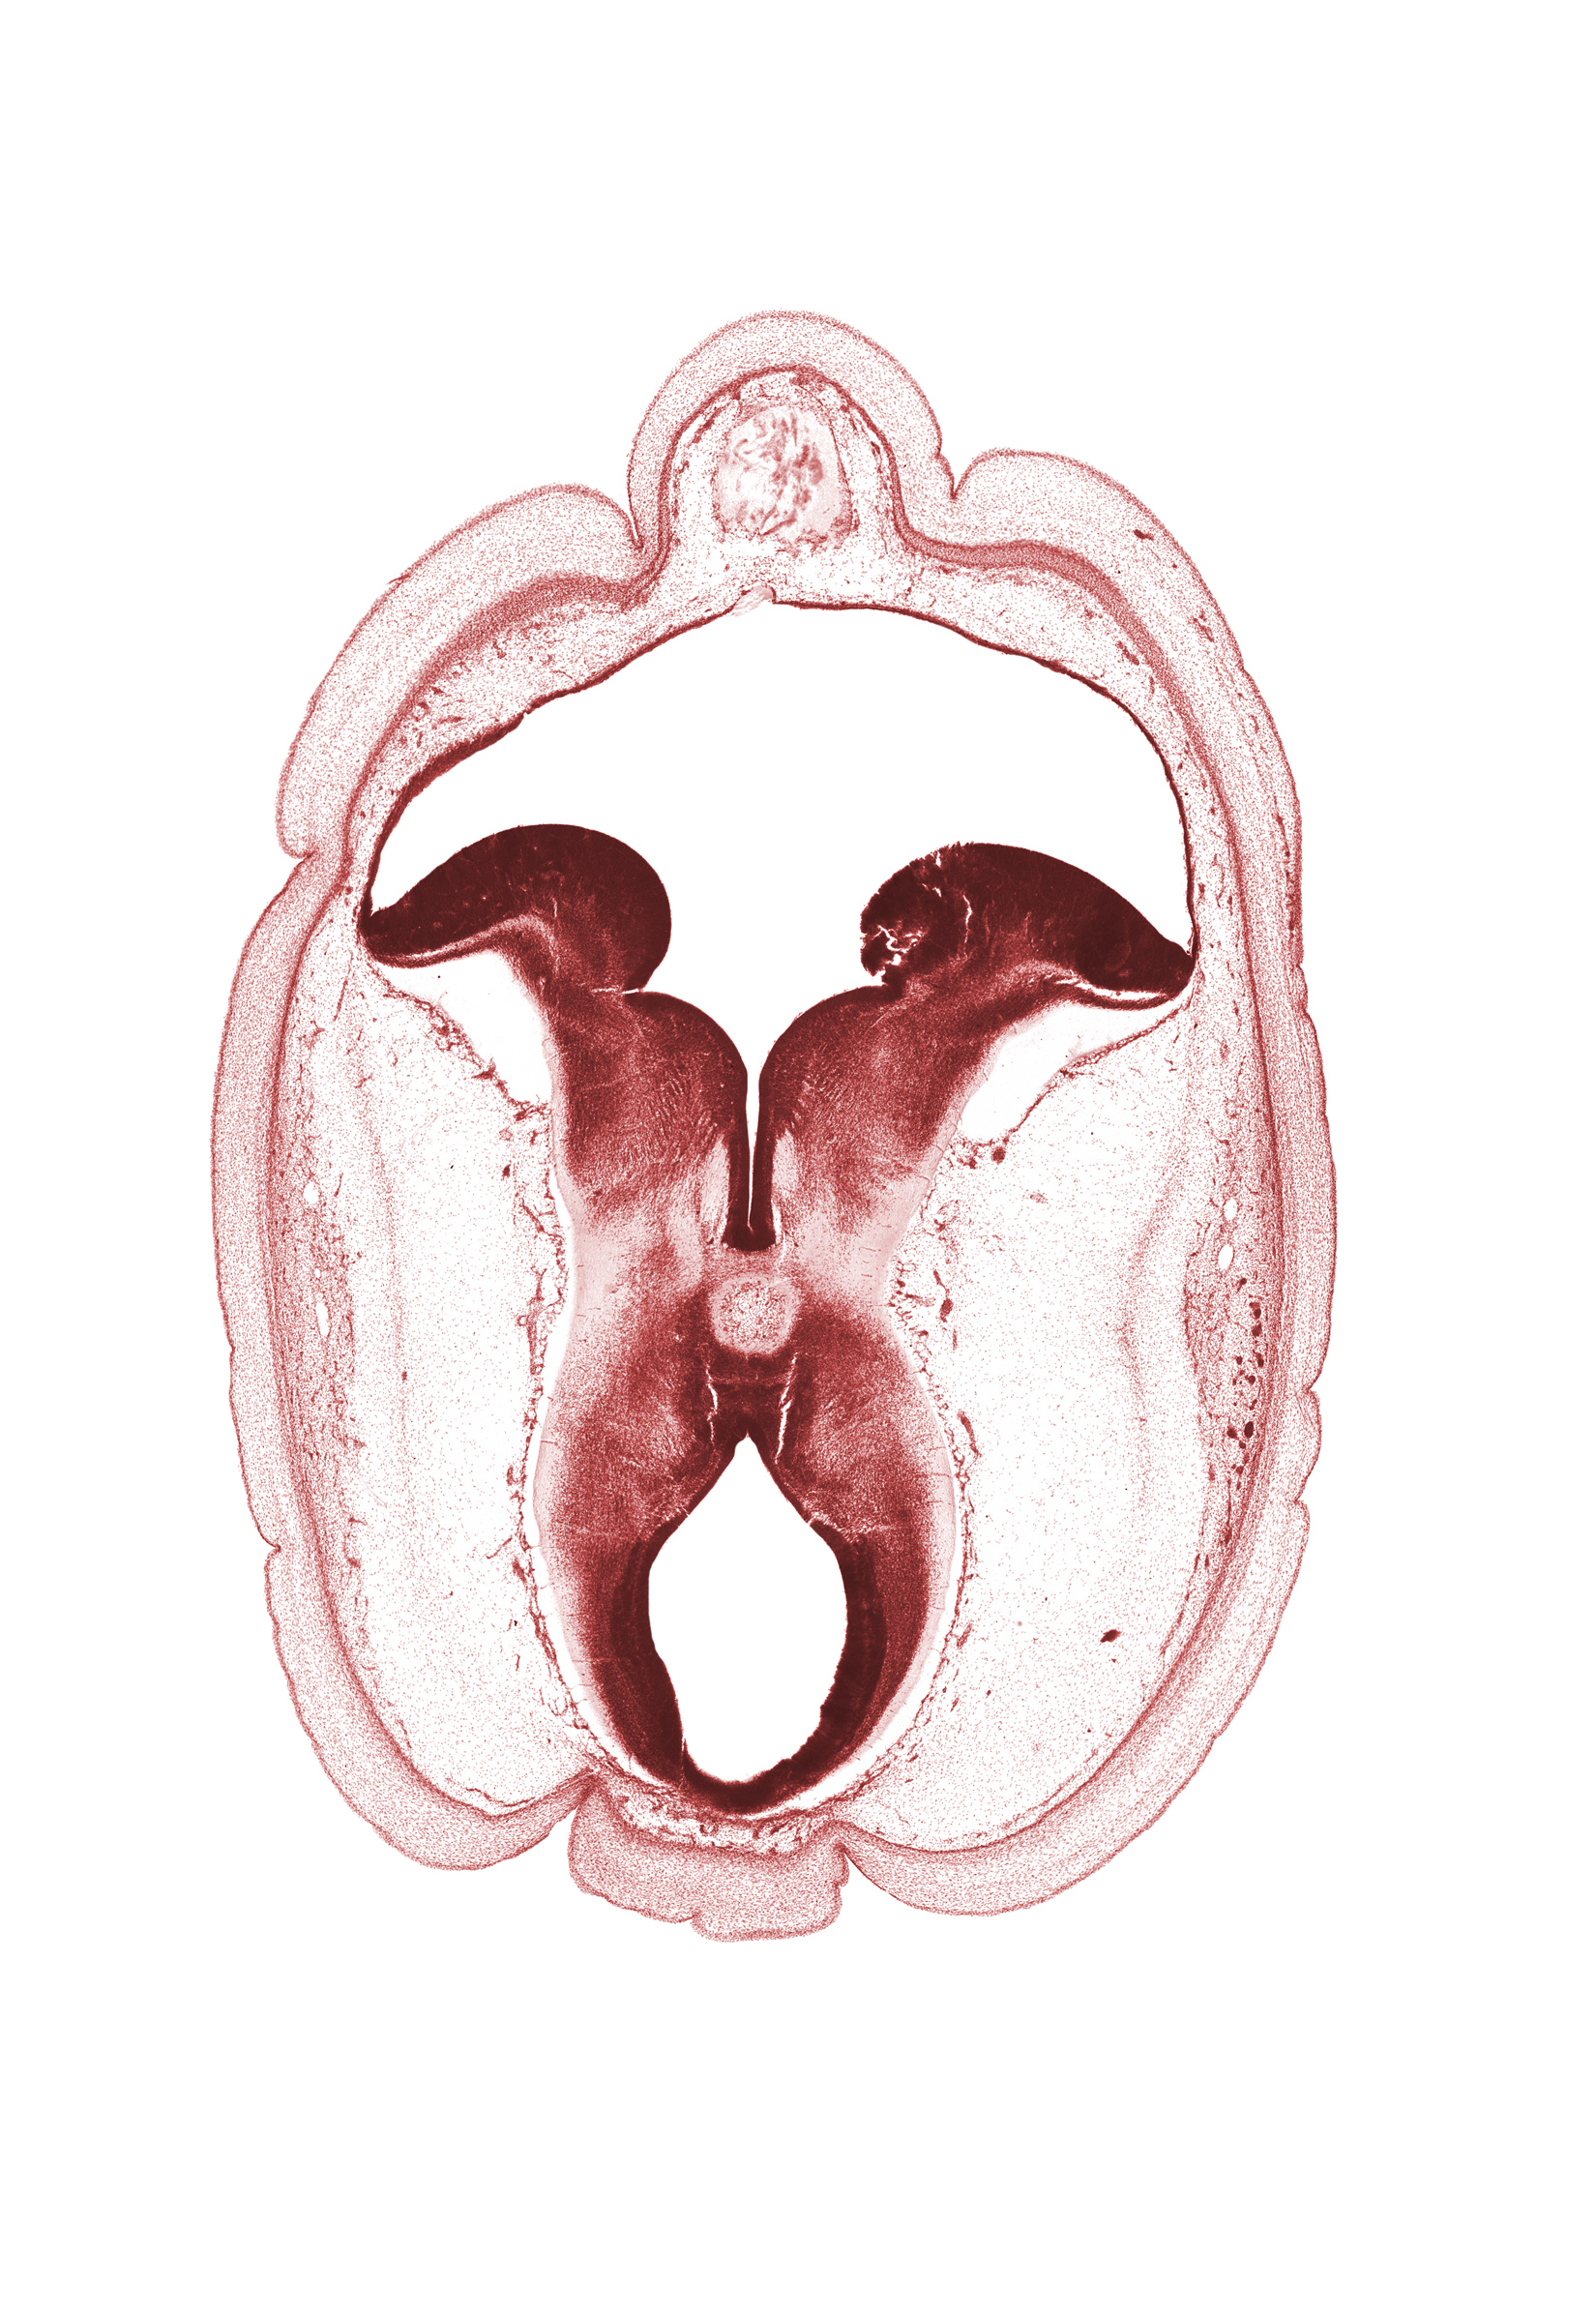 cerebral aqueduct (mesocoele), cerebral peduncle, diverticulum of rhombencoel (fourth ventricle), interpeduncular fossa, mesencephalon, metencephalon, osteogenic layer, rhombencoel (fourth ventricle), roof plate, subarachnoid space, sulcus limitans, tectum of mesencephalon, tegmentum of mesencephalon, tegmentum of metencephalon, trochlear nerve (CN IV)